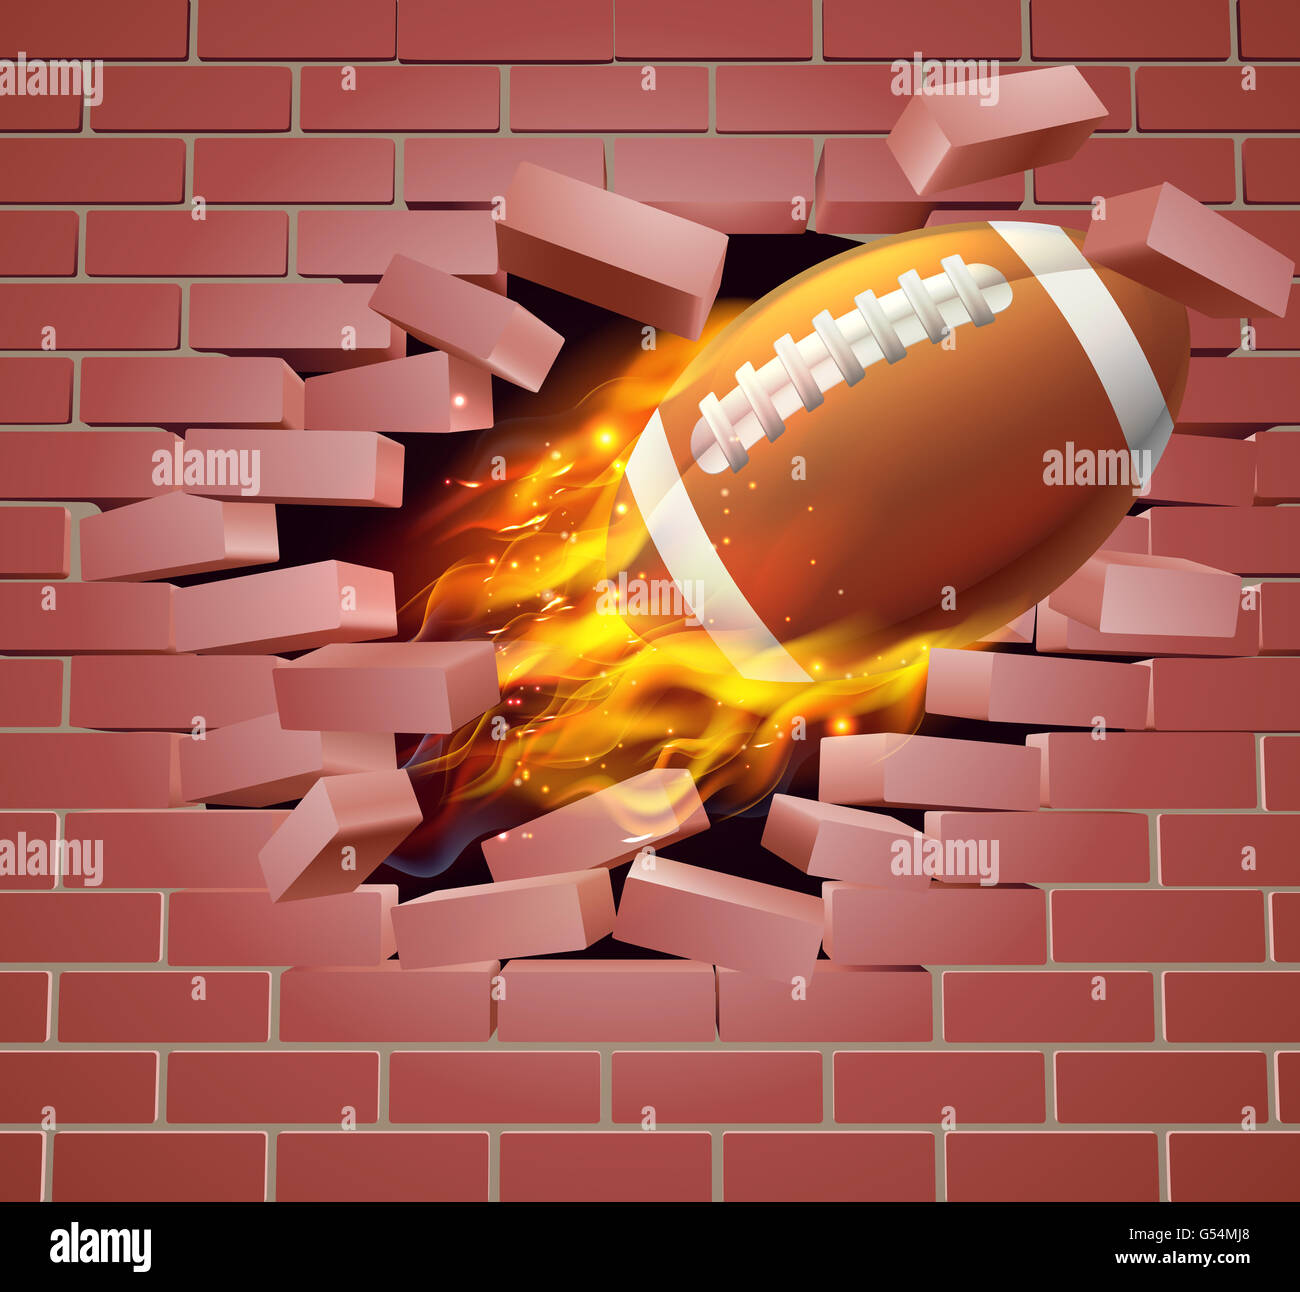 Ein Beispiel für einen brennenden flammenden American Football Ball auf Feuer reißen ein Loch durch die Wand Stockfoto